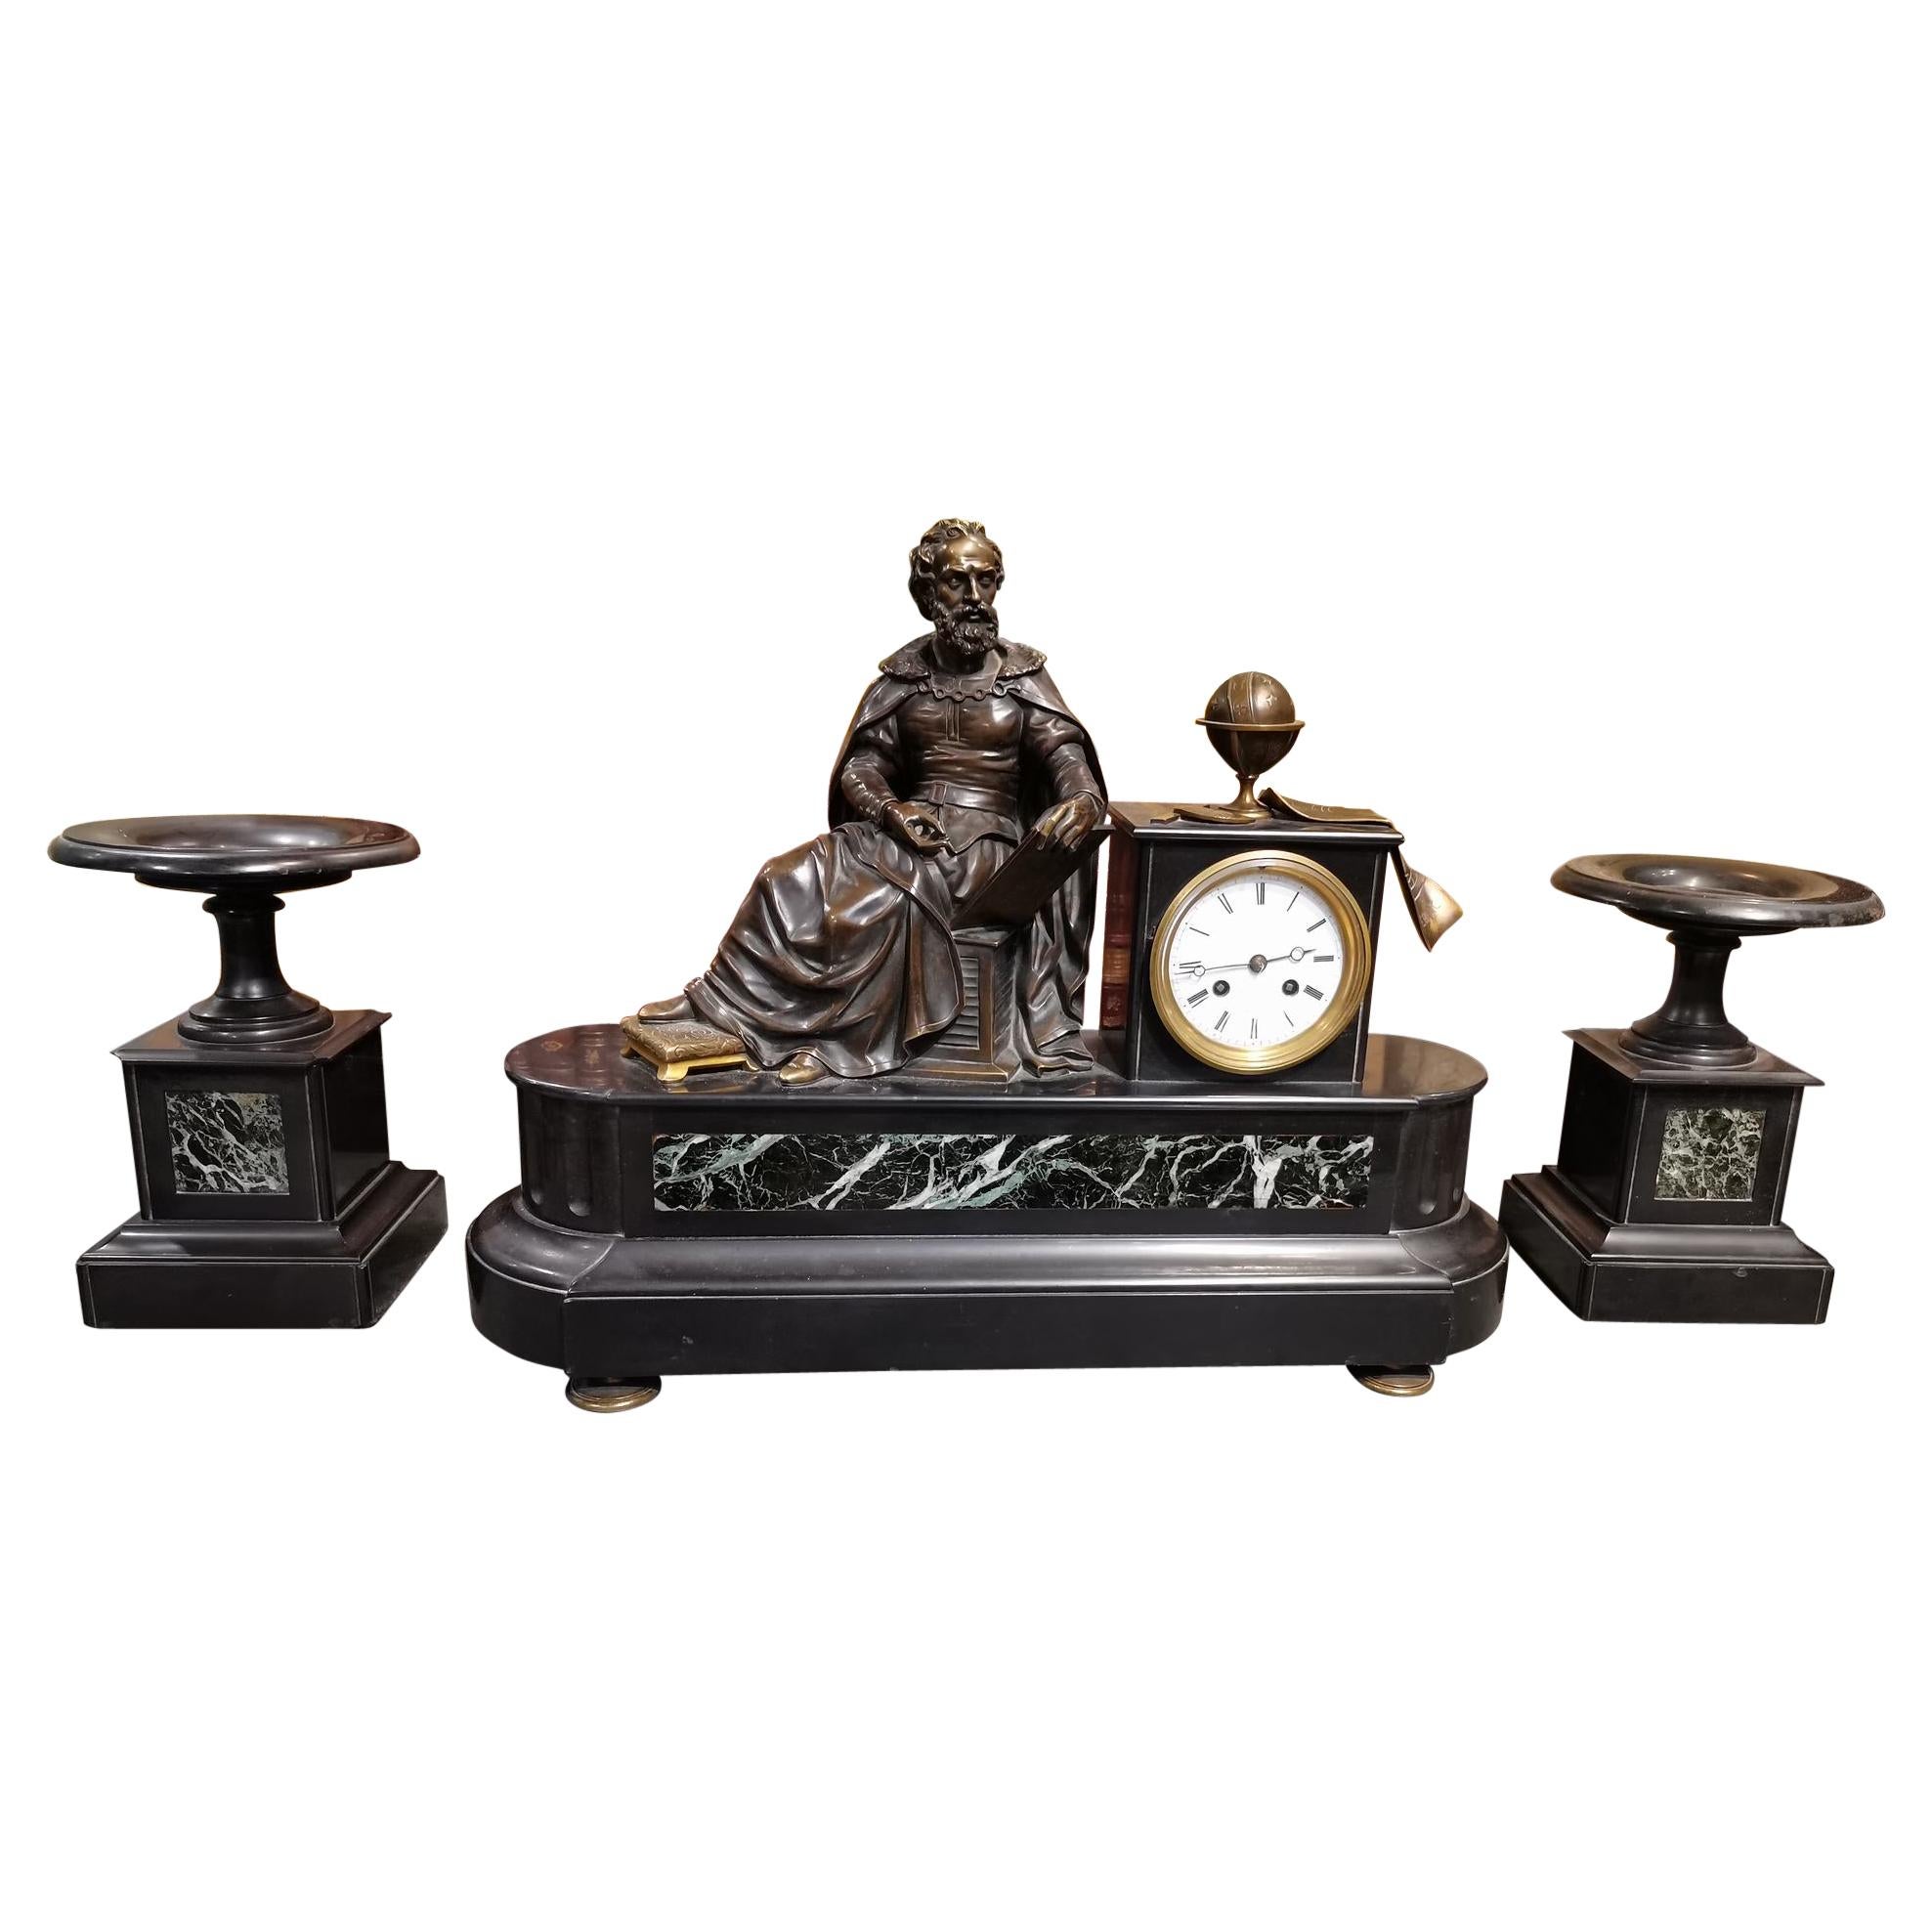 Uhr aus Marmor und Bronze mit Sternbild-Allegorie, die Copernico repräsentiert